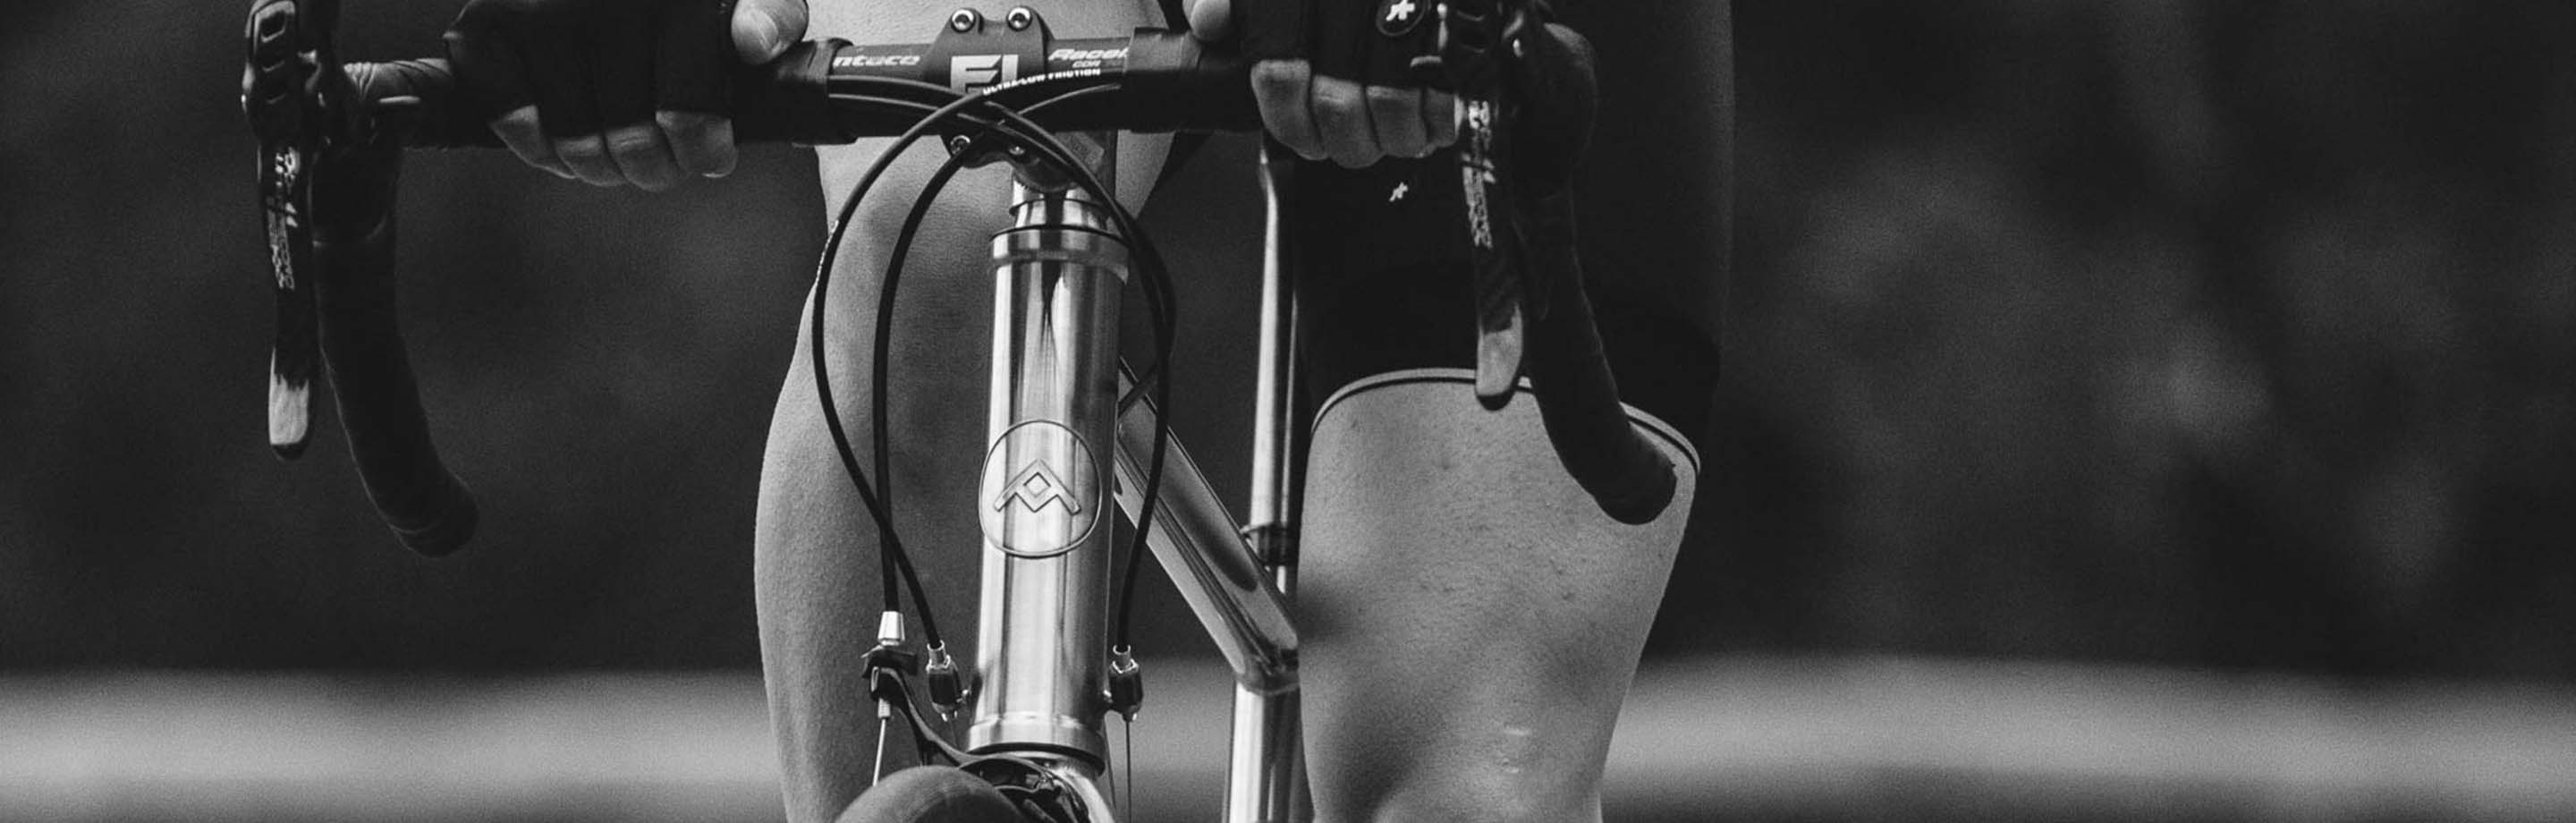 Rennstahl Bikes - Edele high-end fietsen van staal